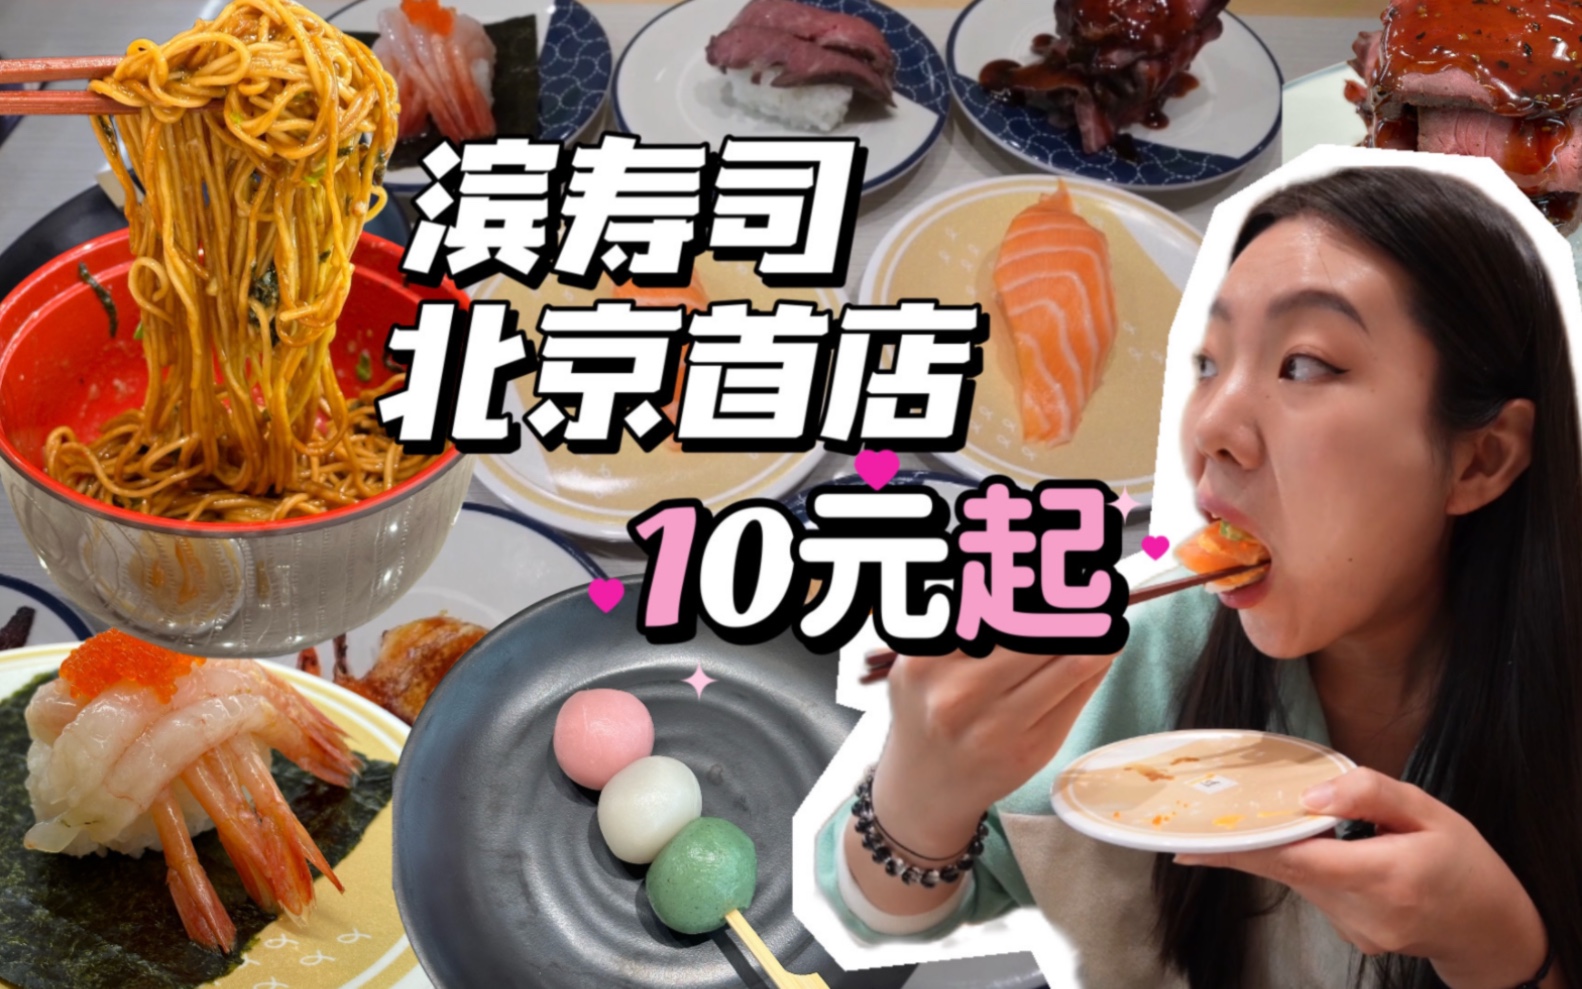 日本老牌平价寿司连锁店开来北京了，开业第一天来凑热闹，两女生吃饱吃好要花多少钱